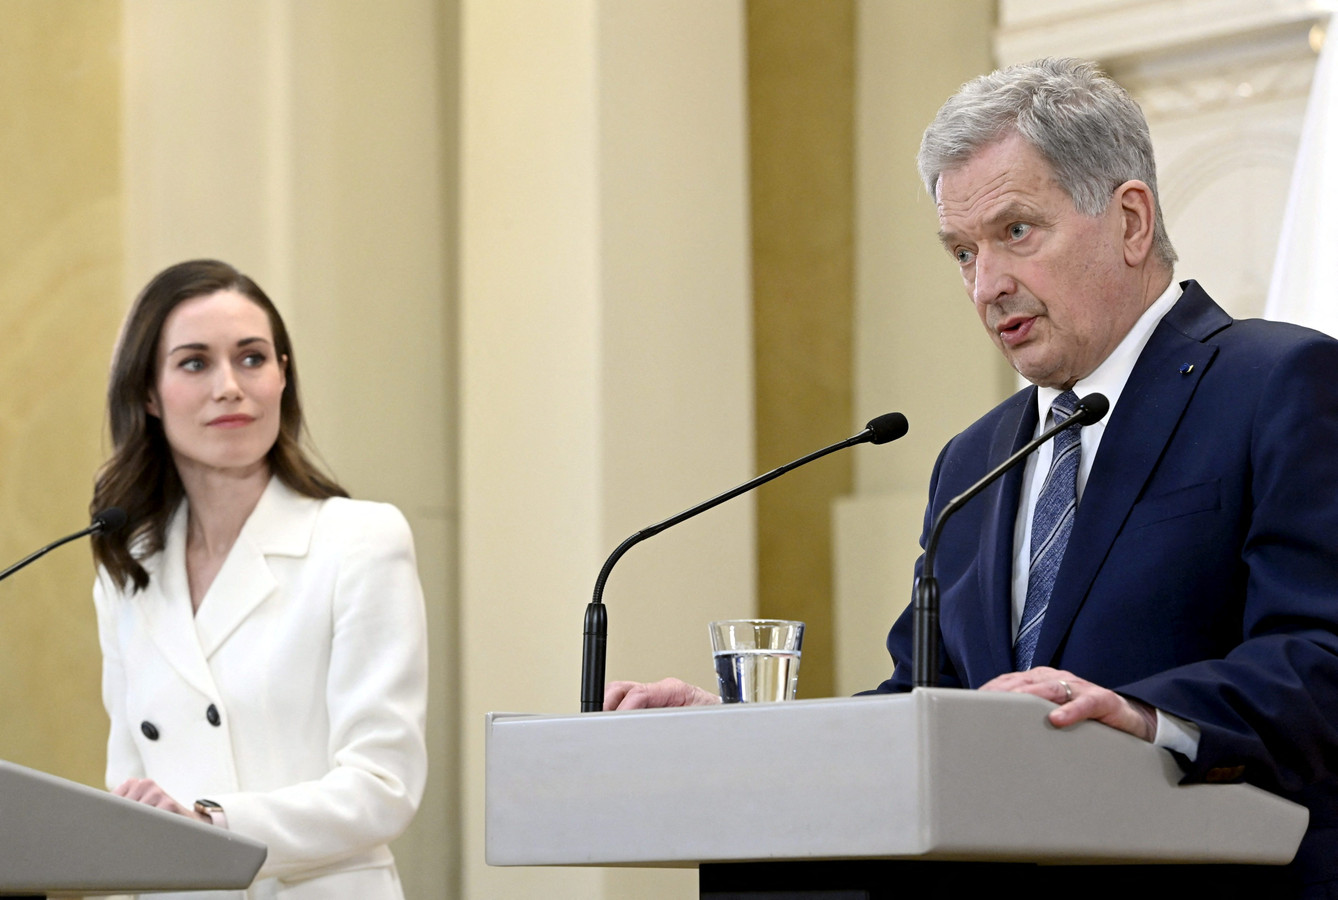 Premier Sanna Marin en president Sauli Niinistö tijdens hun gezamenlijke persconferentie in Helsinki.